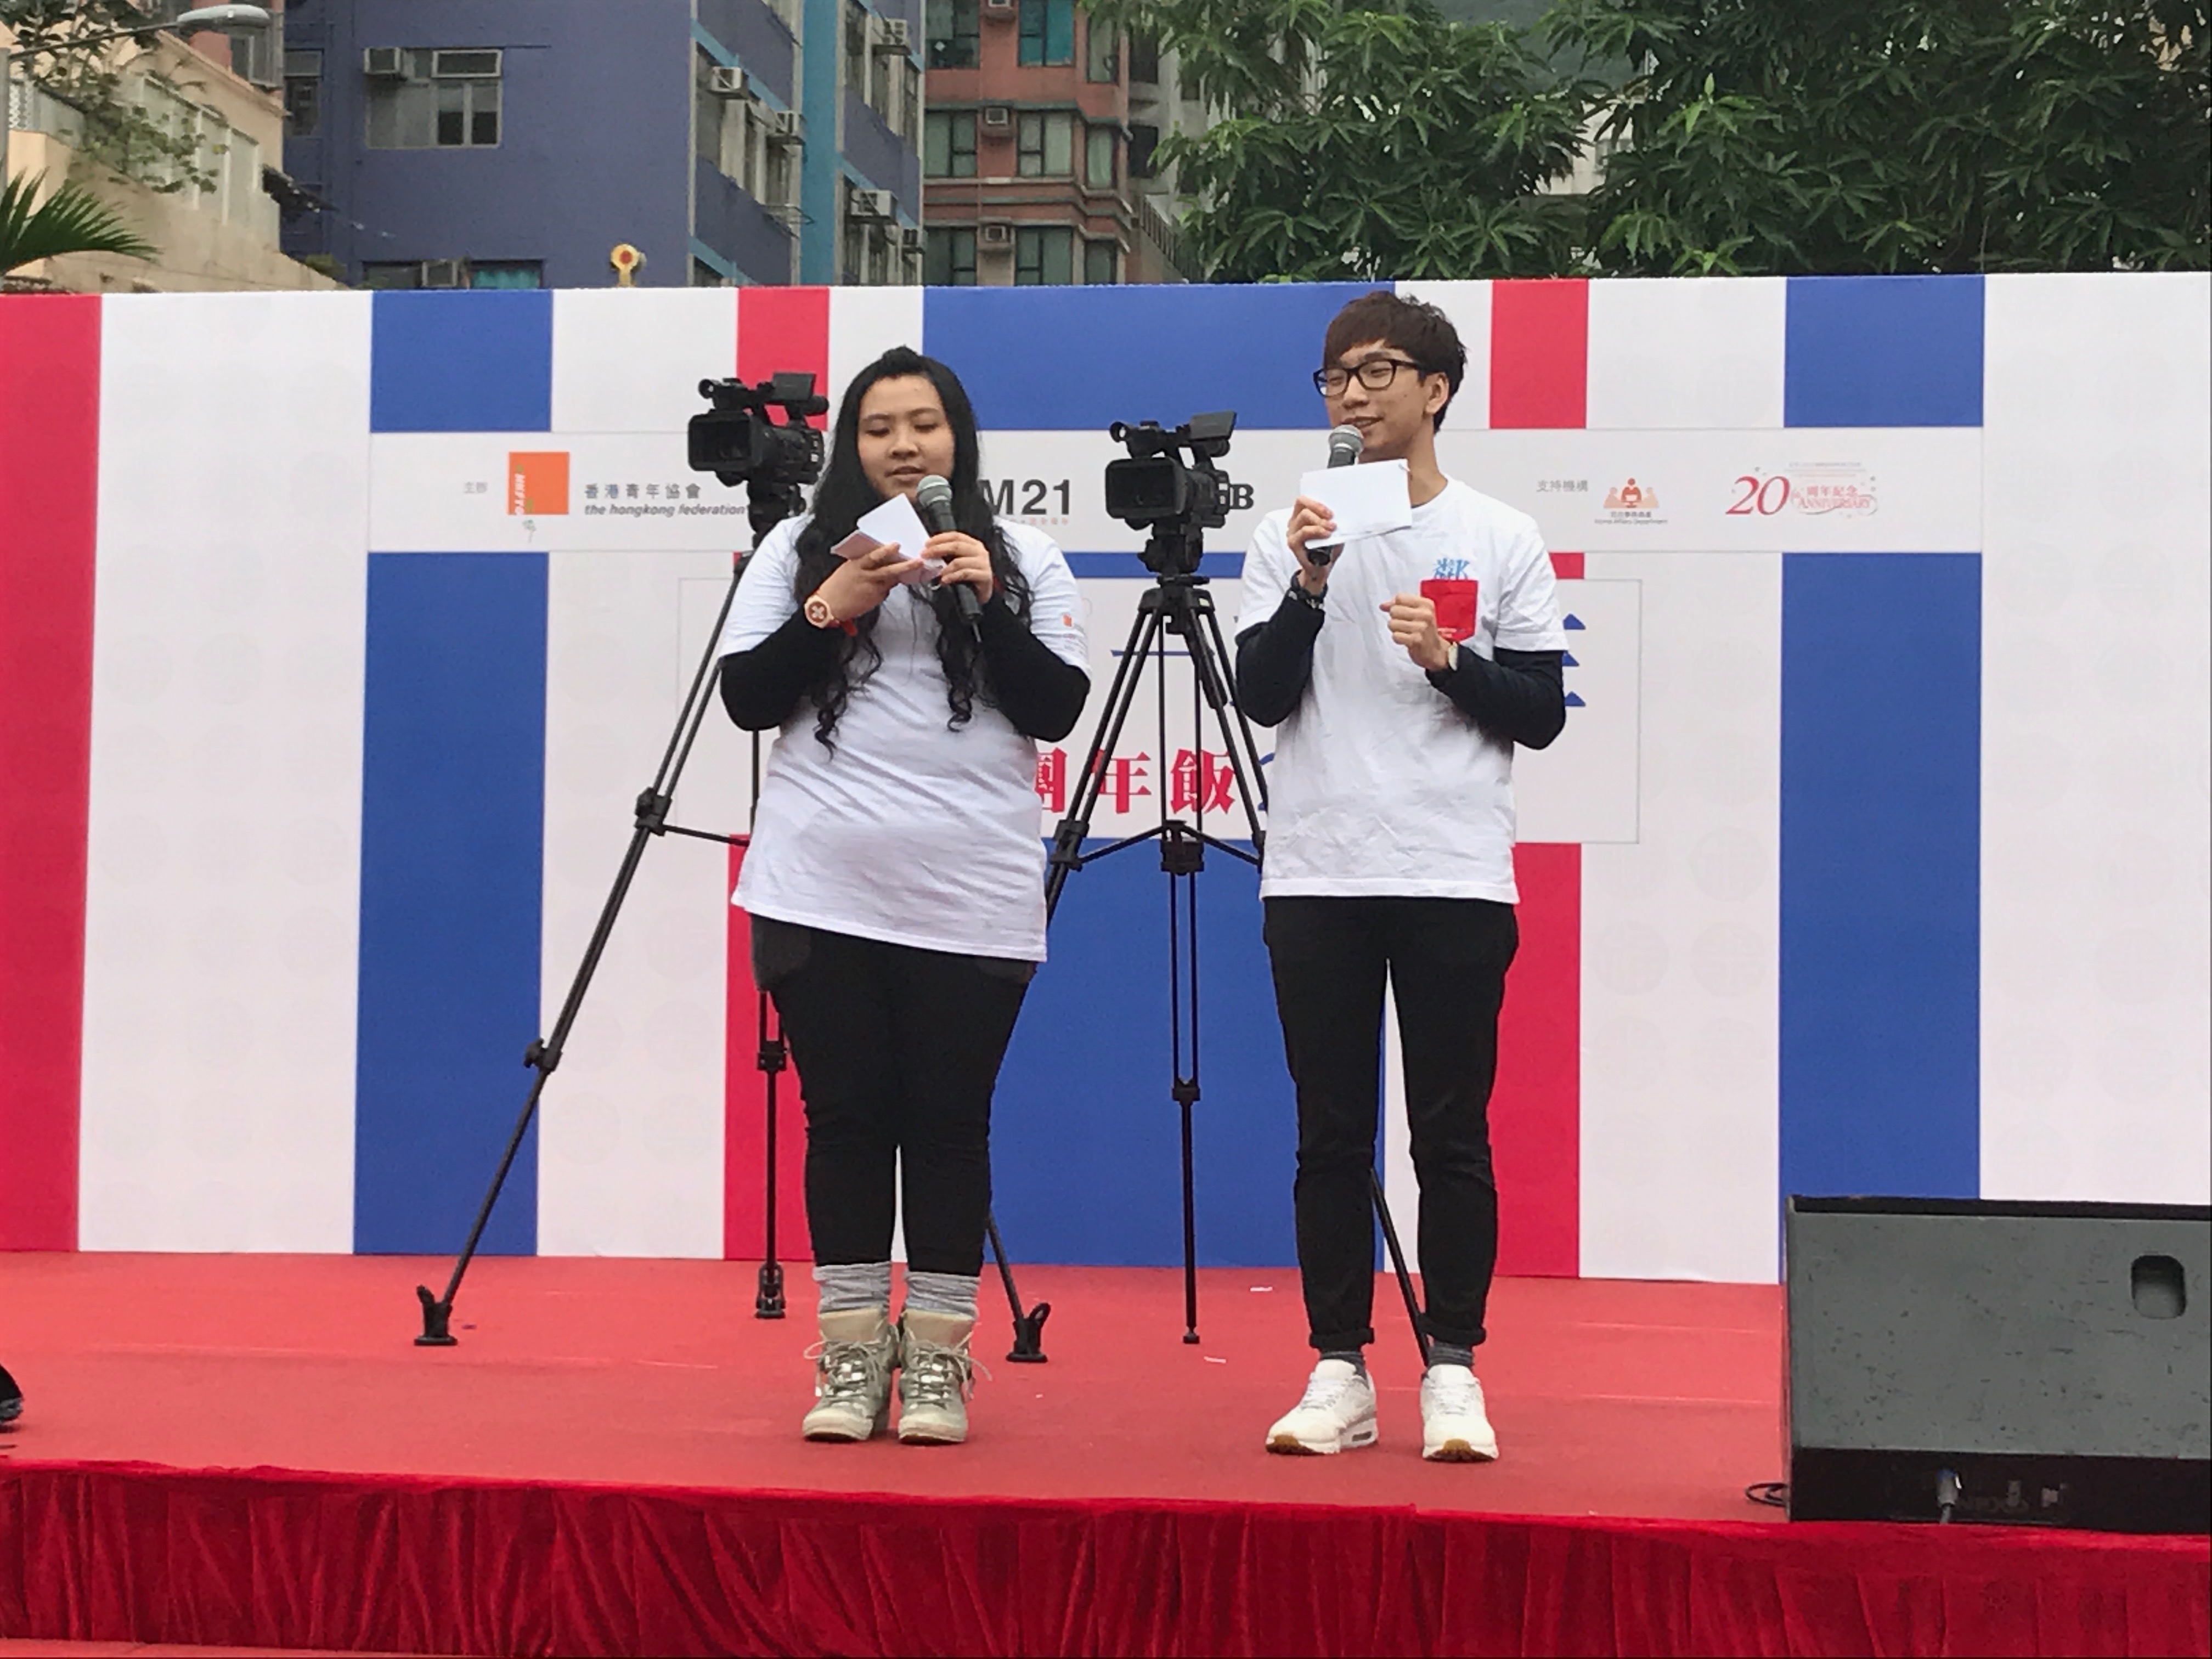 細眼司儀工作紀錄: 「活動主持」香港青年協會M21媒體空間鄰舍團年飯2017